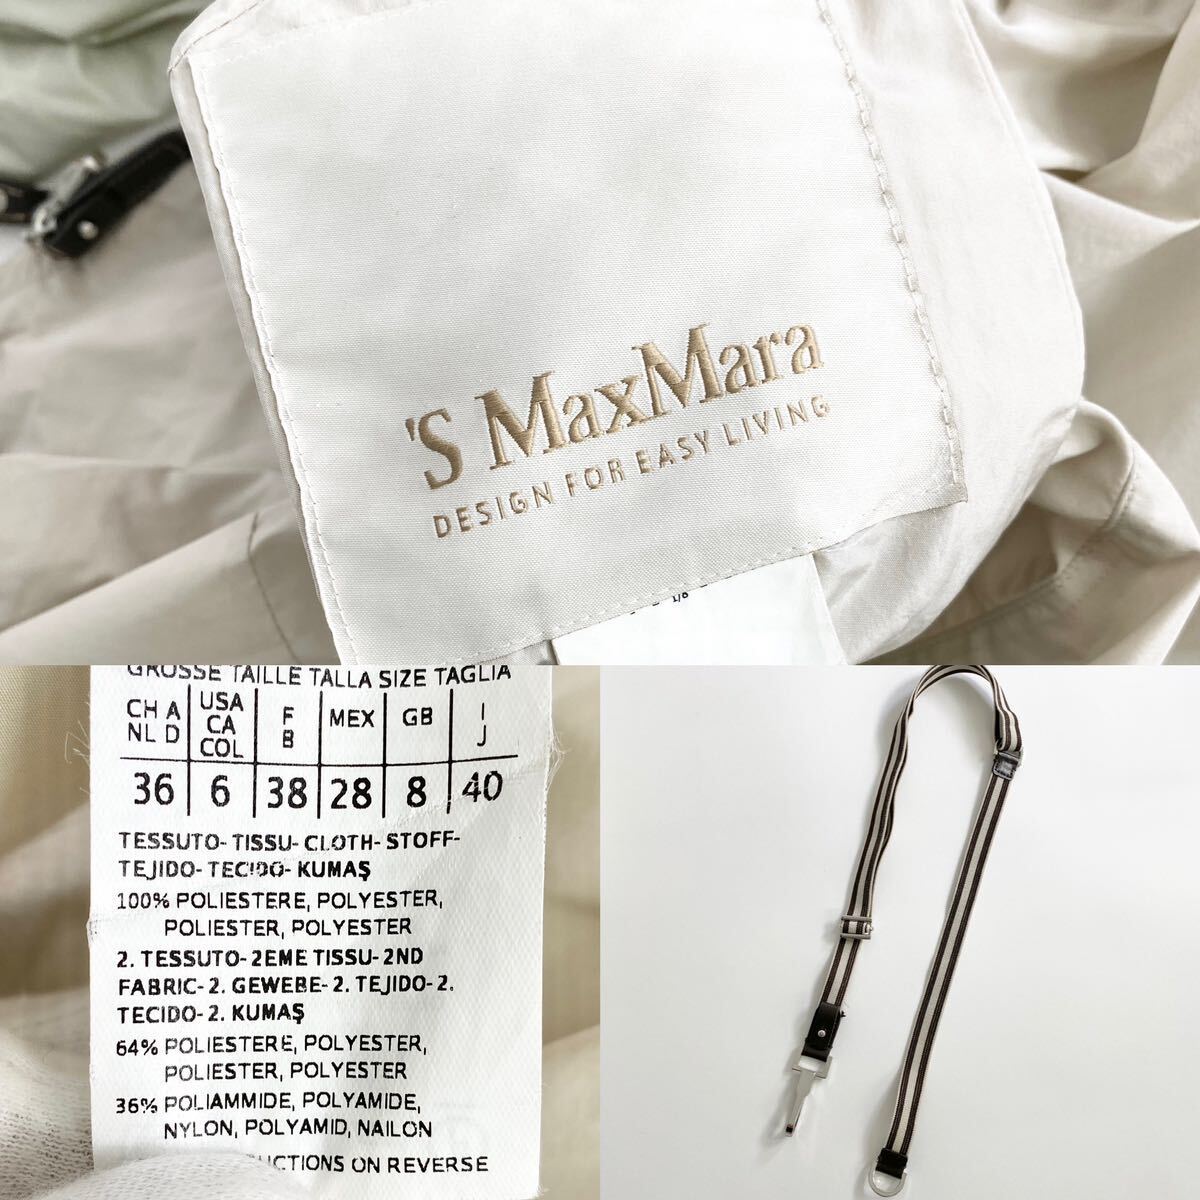 Fe18 S\'Max Maraes Max Mara 2way двусторонний весеннее пальто мельчайший водоотталкивающий плащ с капюшоном .40 L размер соответствует женский 